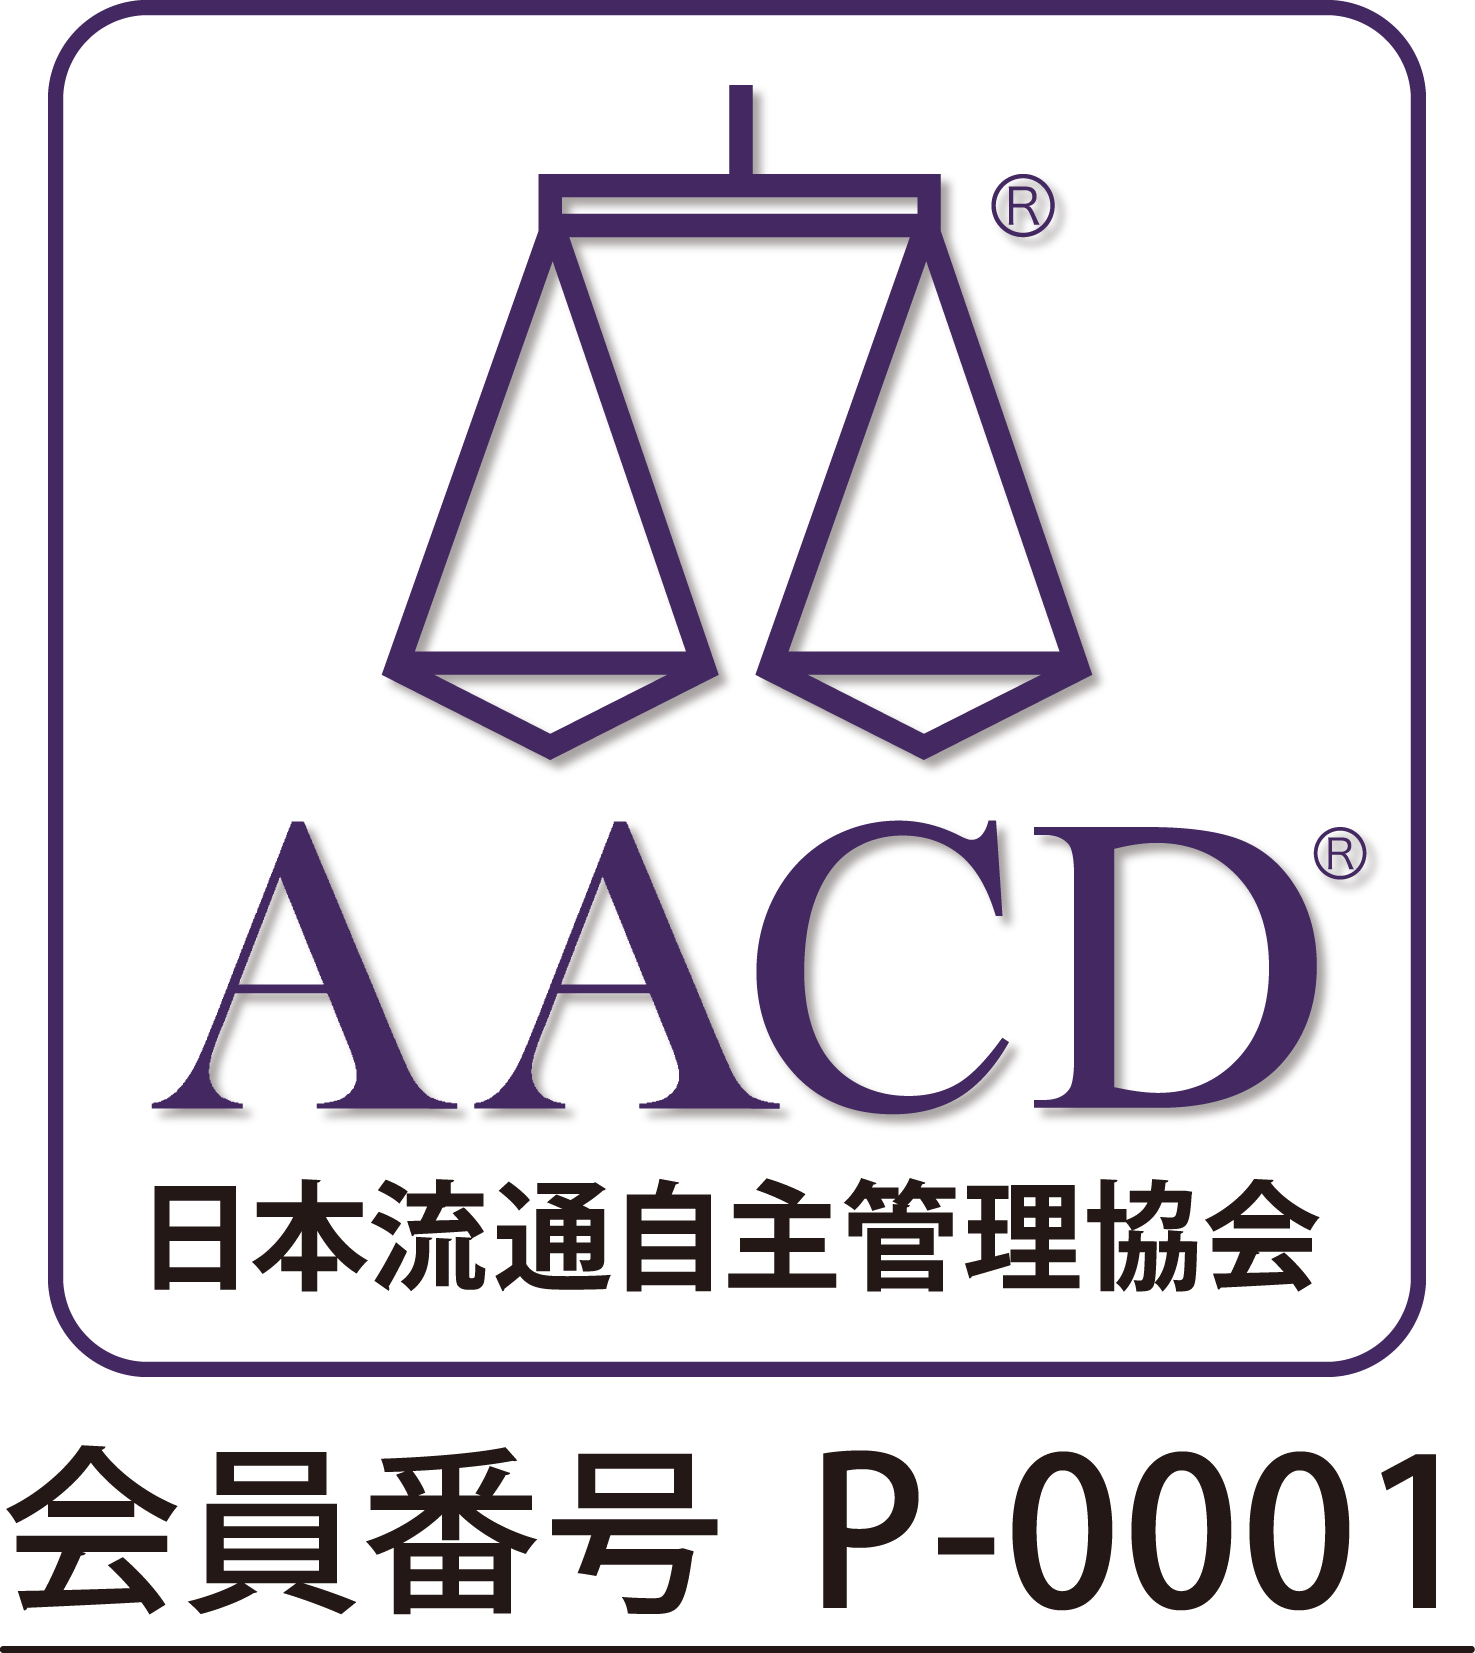 AACD賛助会員 S-0004